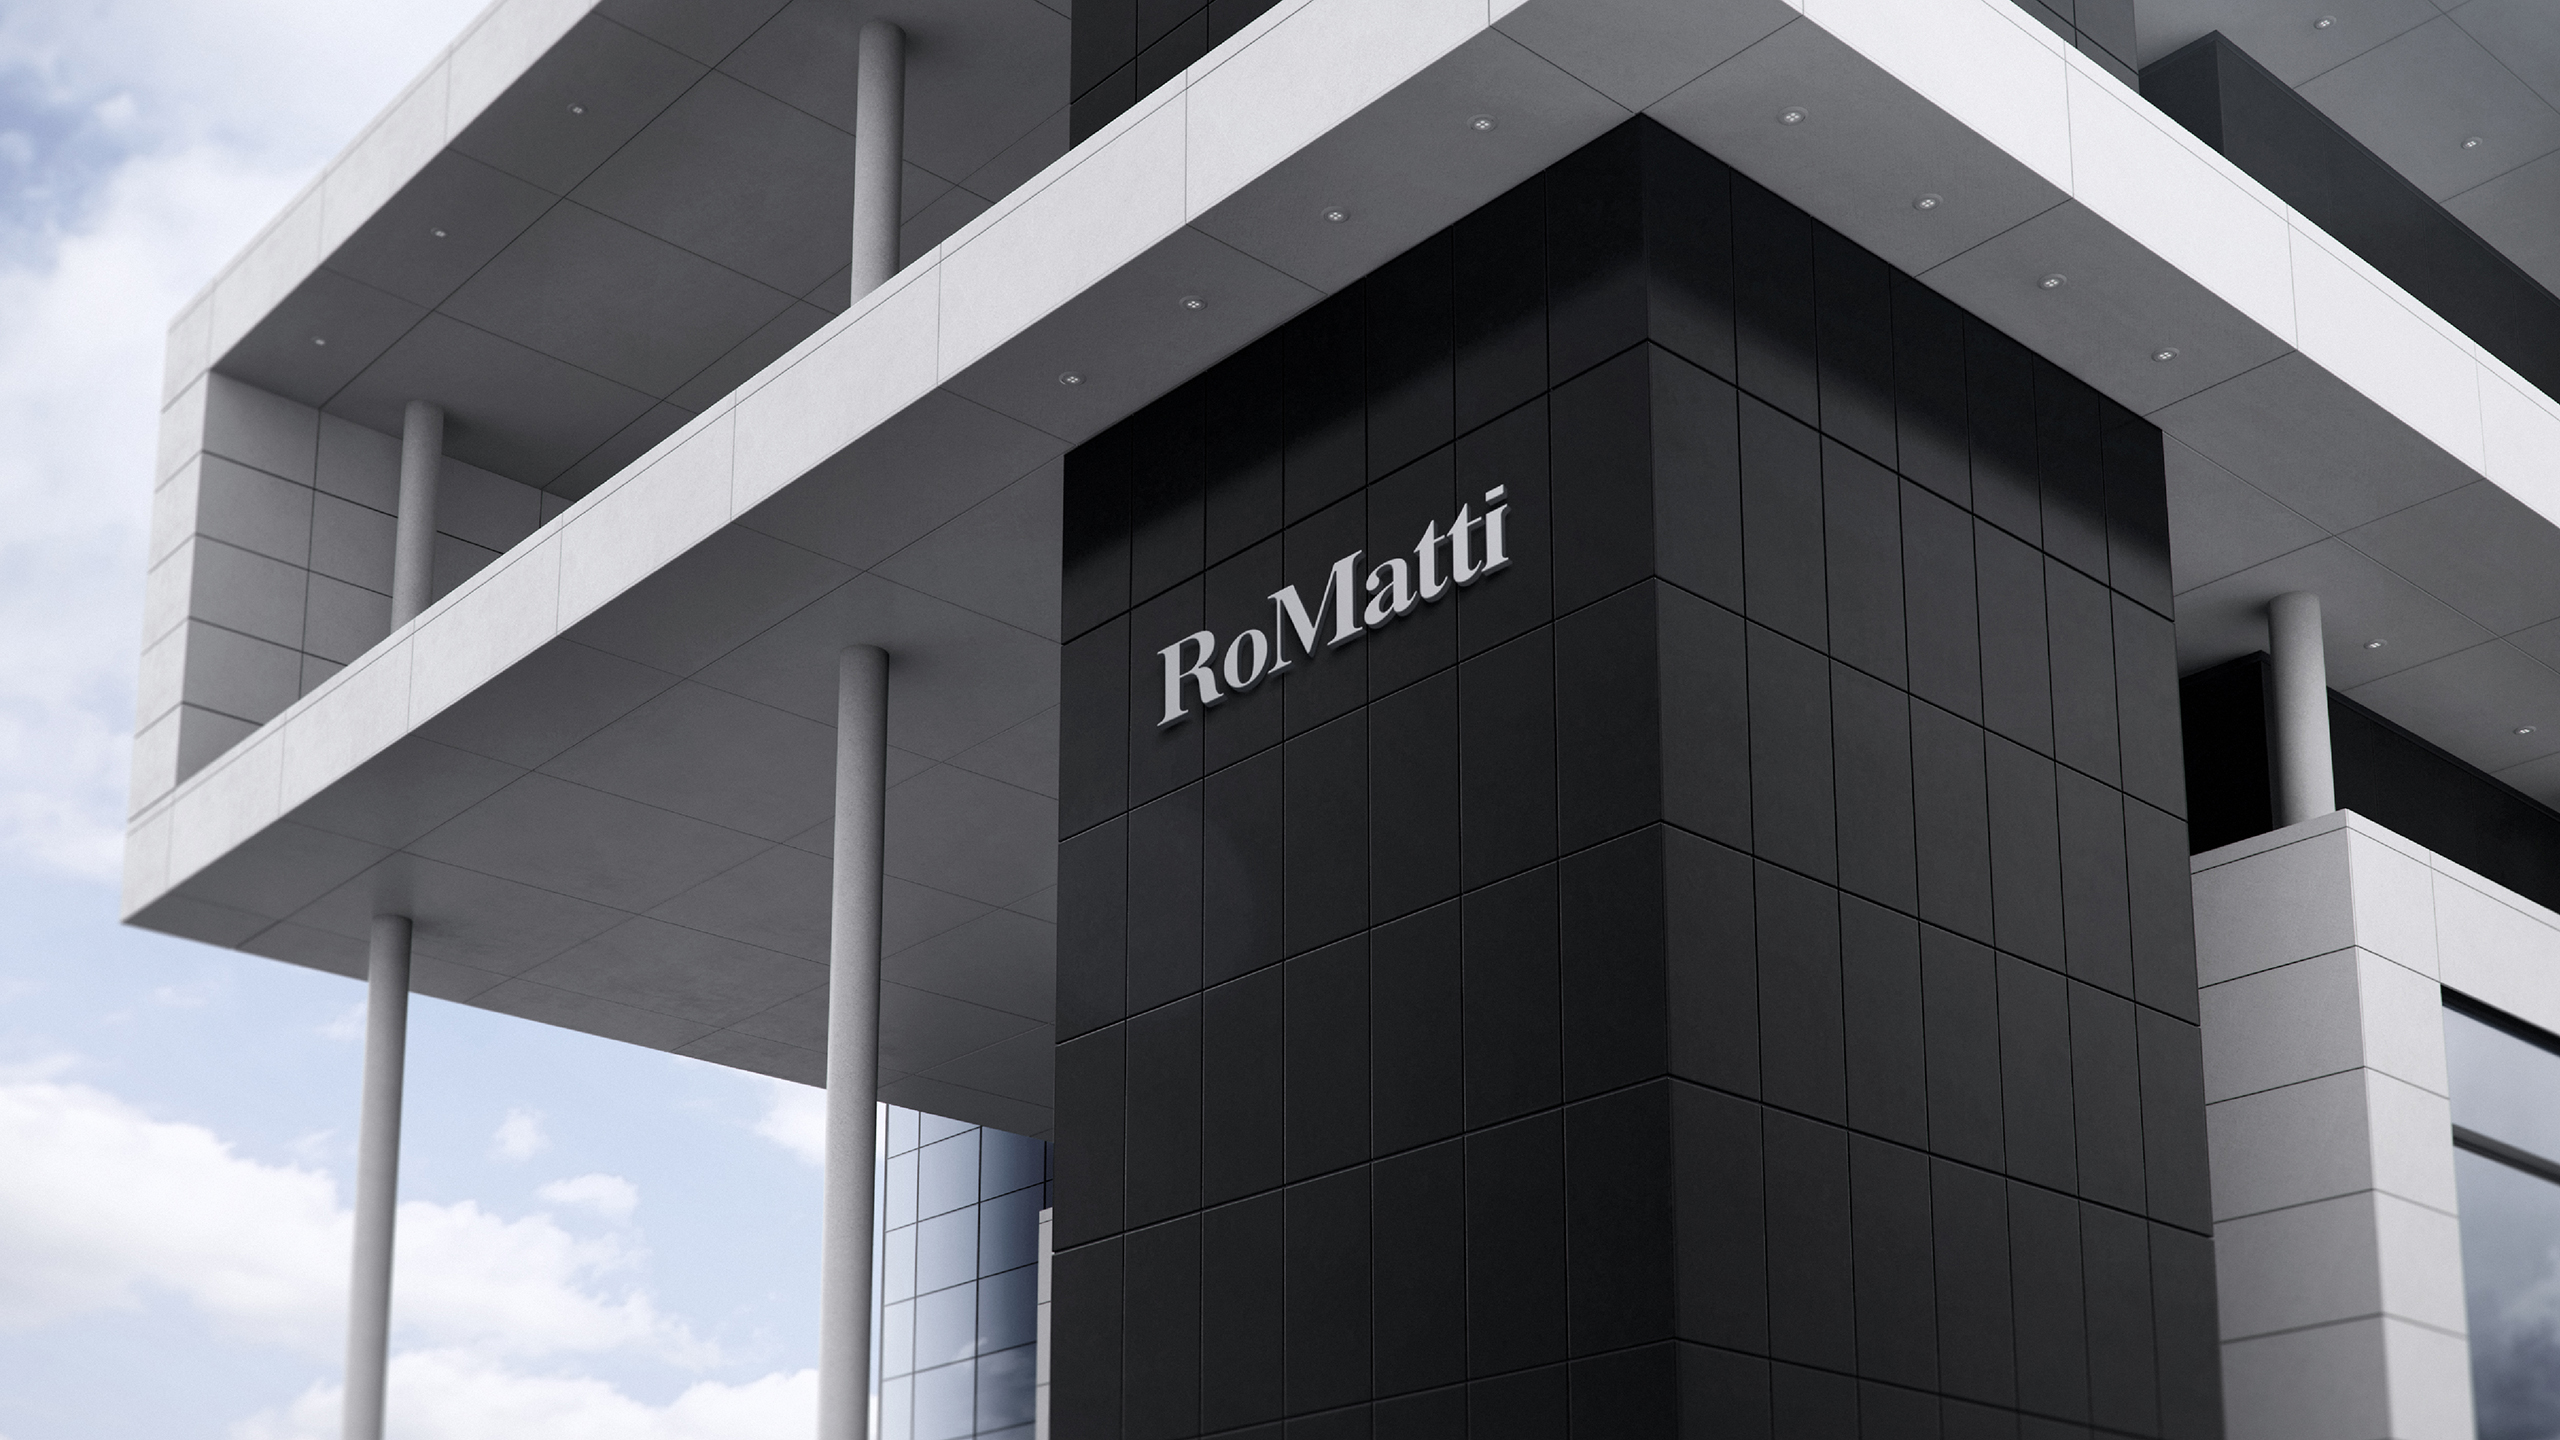 RoMatti 案例整理网页尺寸-22.jpg